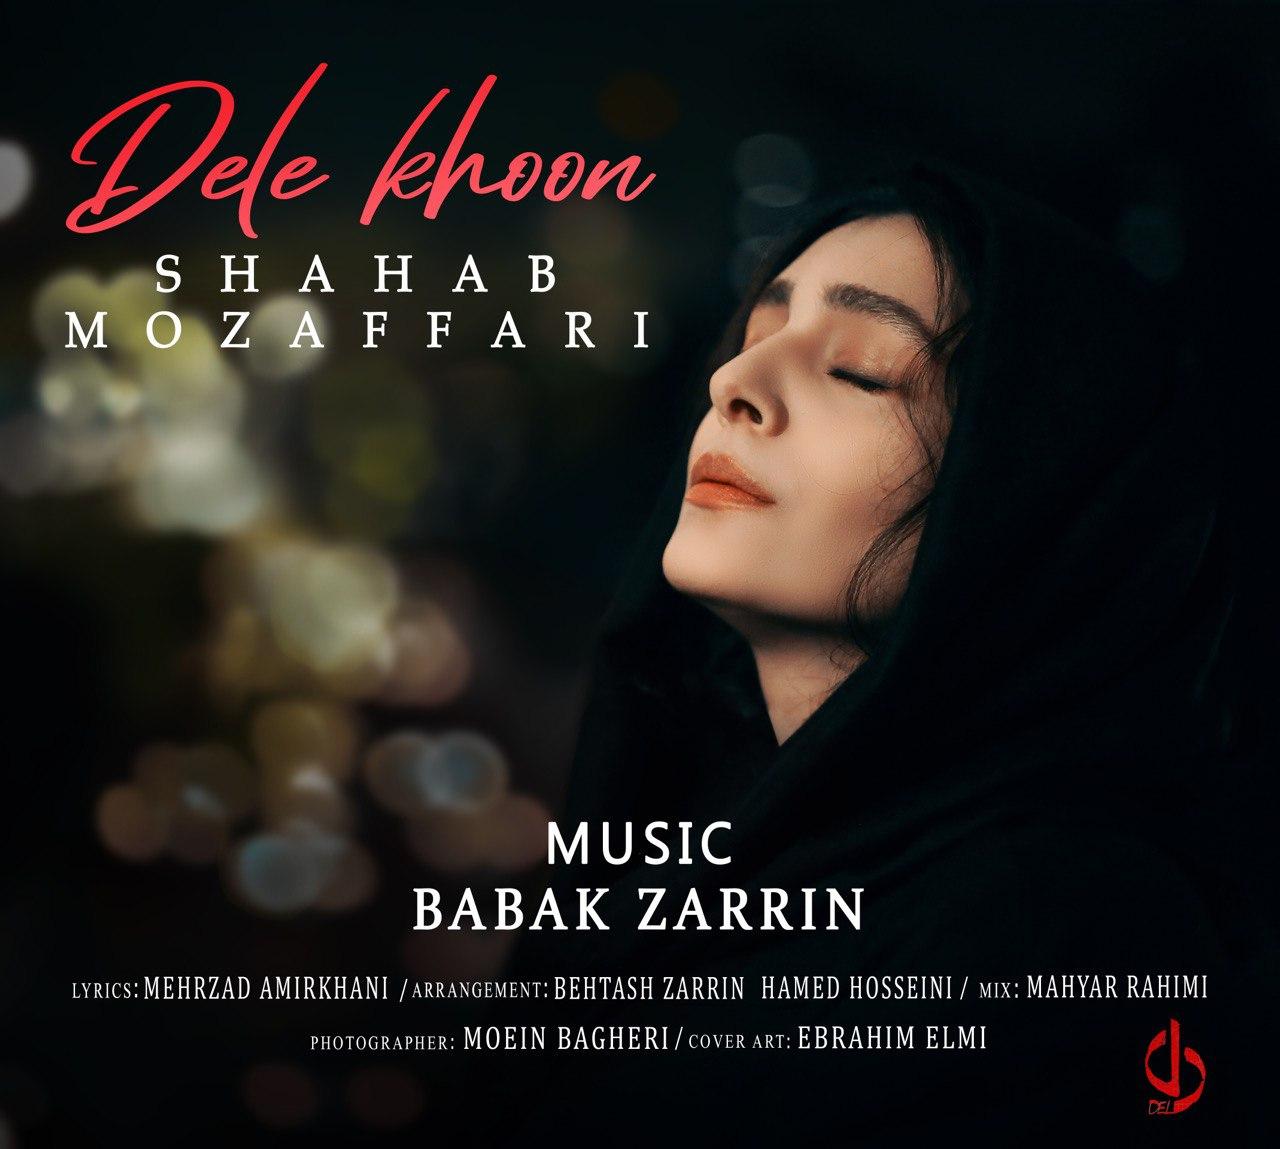  دانلود آهنگ جدید شهاب مظفری - دل خون | Download New Music By Shahab Mozaffari - Dele Khoon